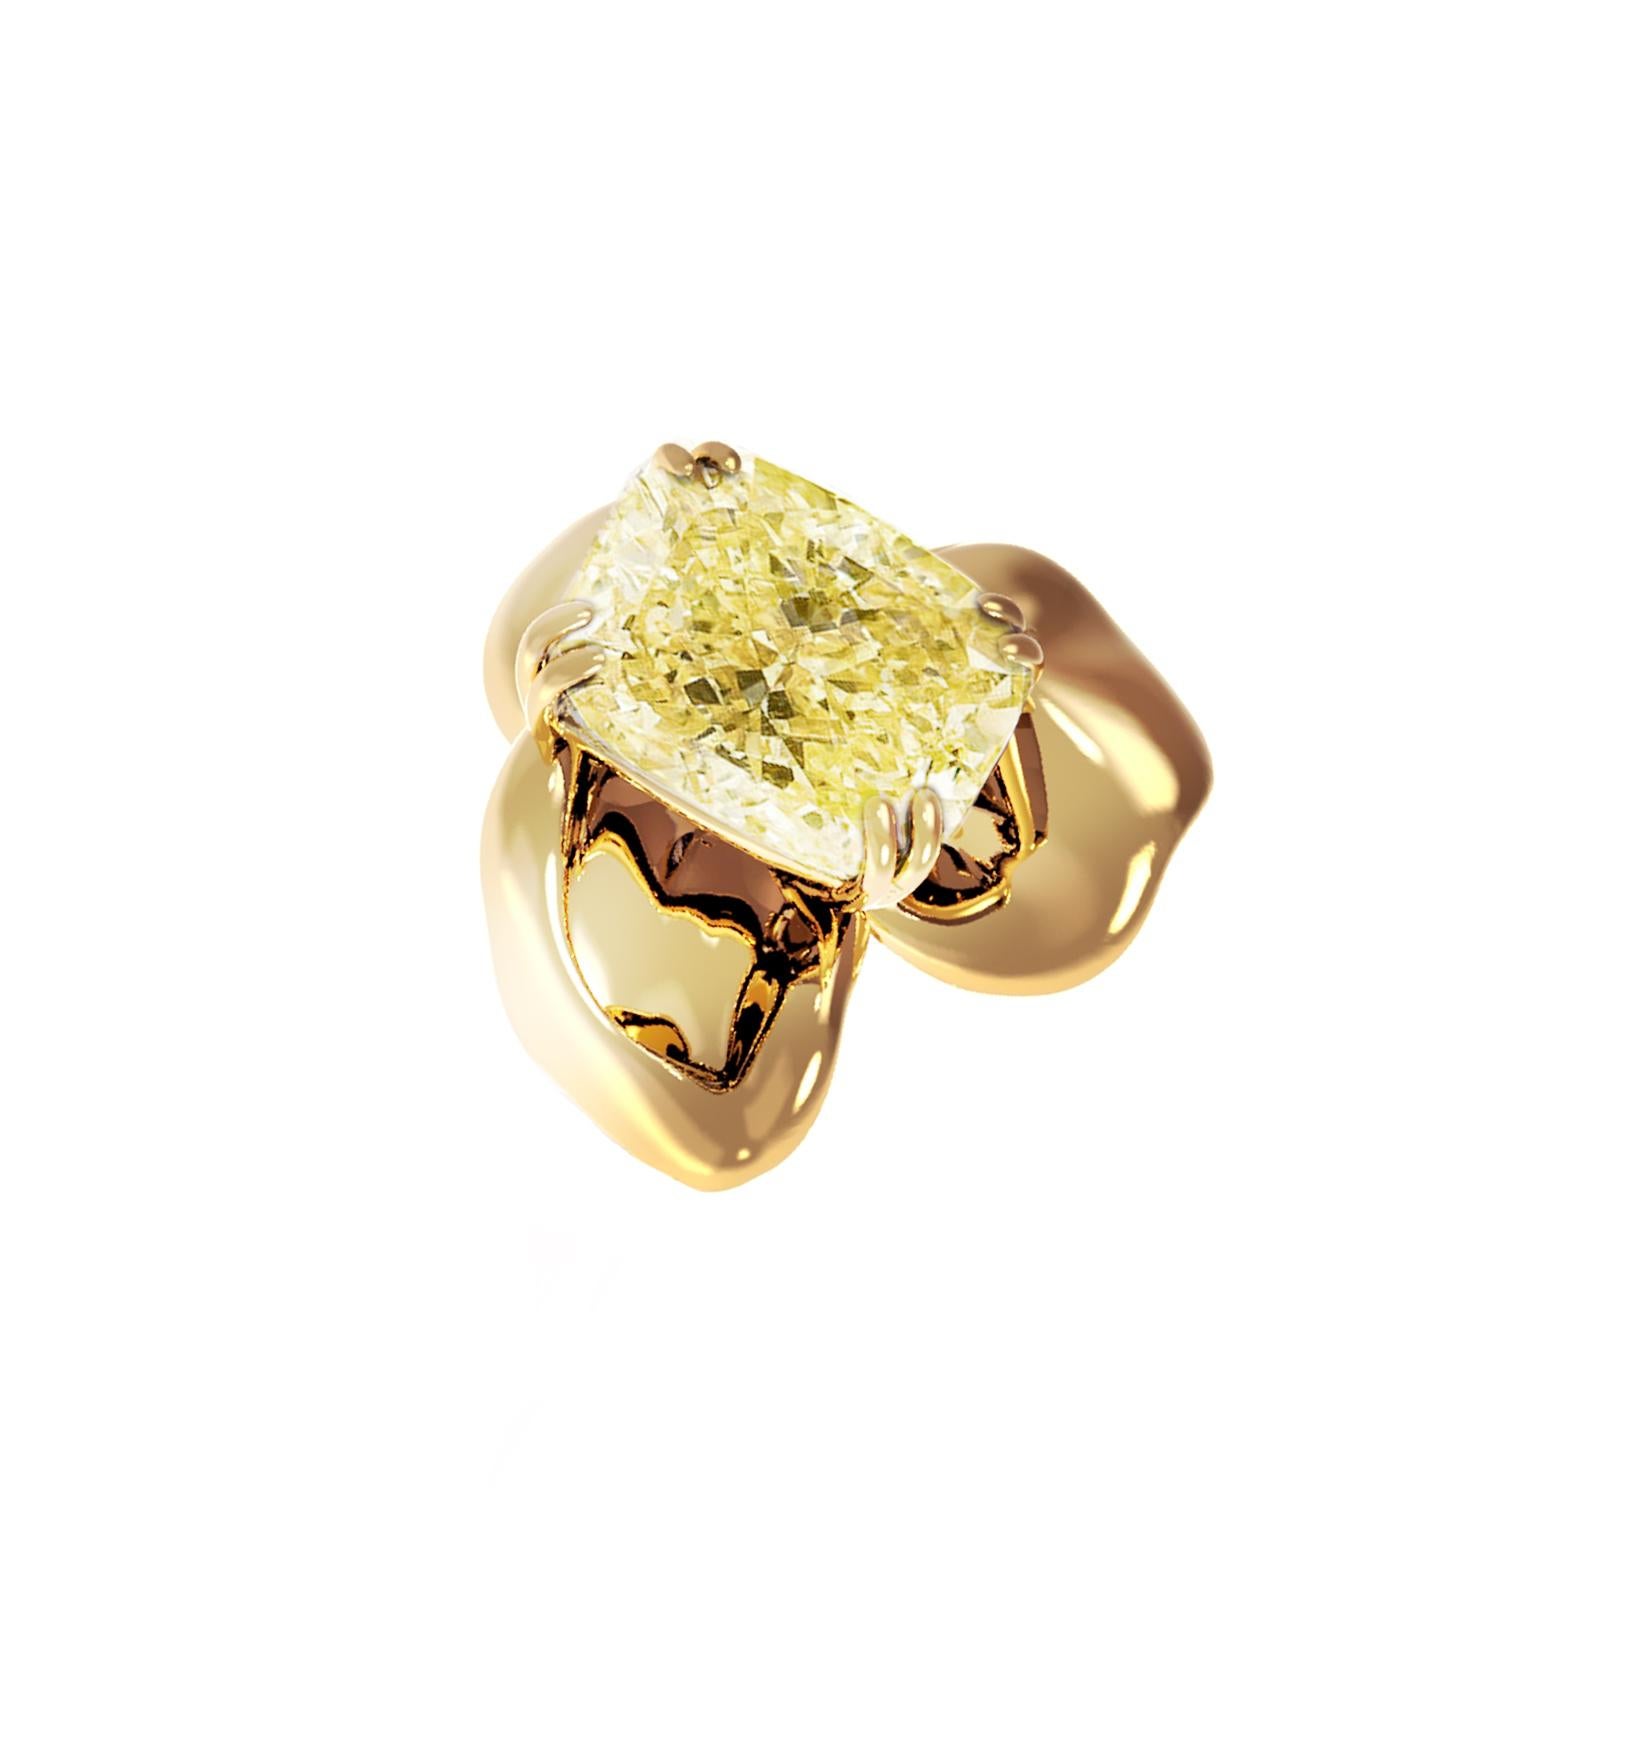 Ce collier pendentif Buttercup est réalisé en or jaune 18 carats et comporte un diamant coussin jaune naturel pesant 1 carat (Y-Z, SI). La taille coussin est un choix idéal pour les diamants jaunes, et la pierre précieuse est soigneusement